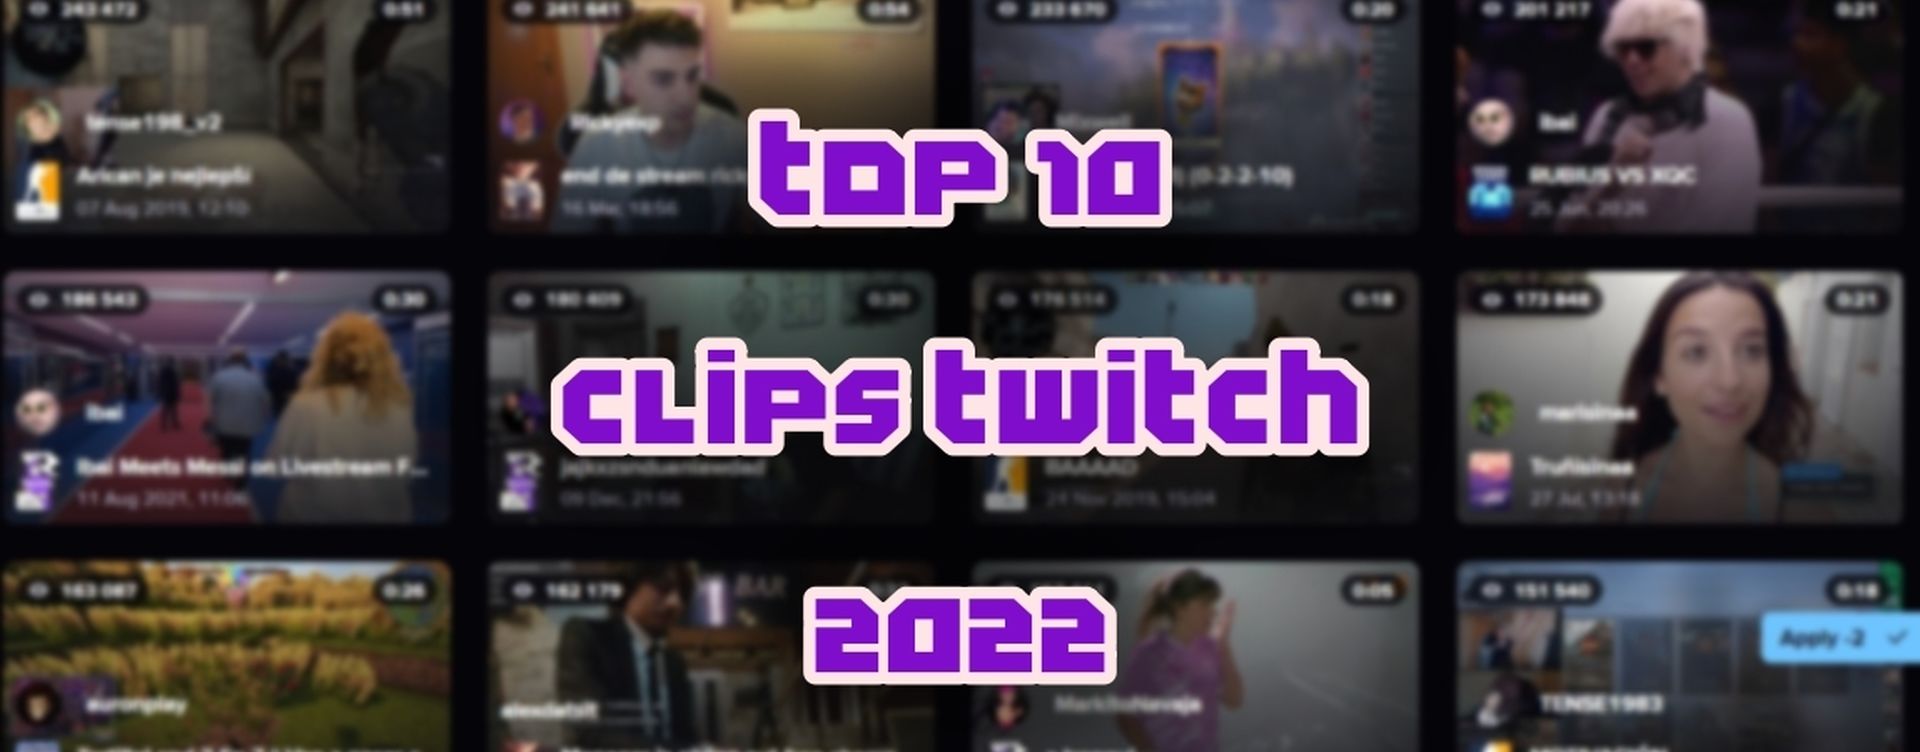 Los 10 clips con más visualizaciones de Twitch en 2022